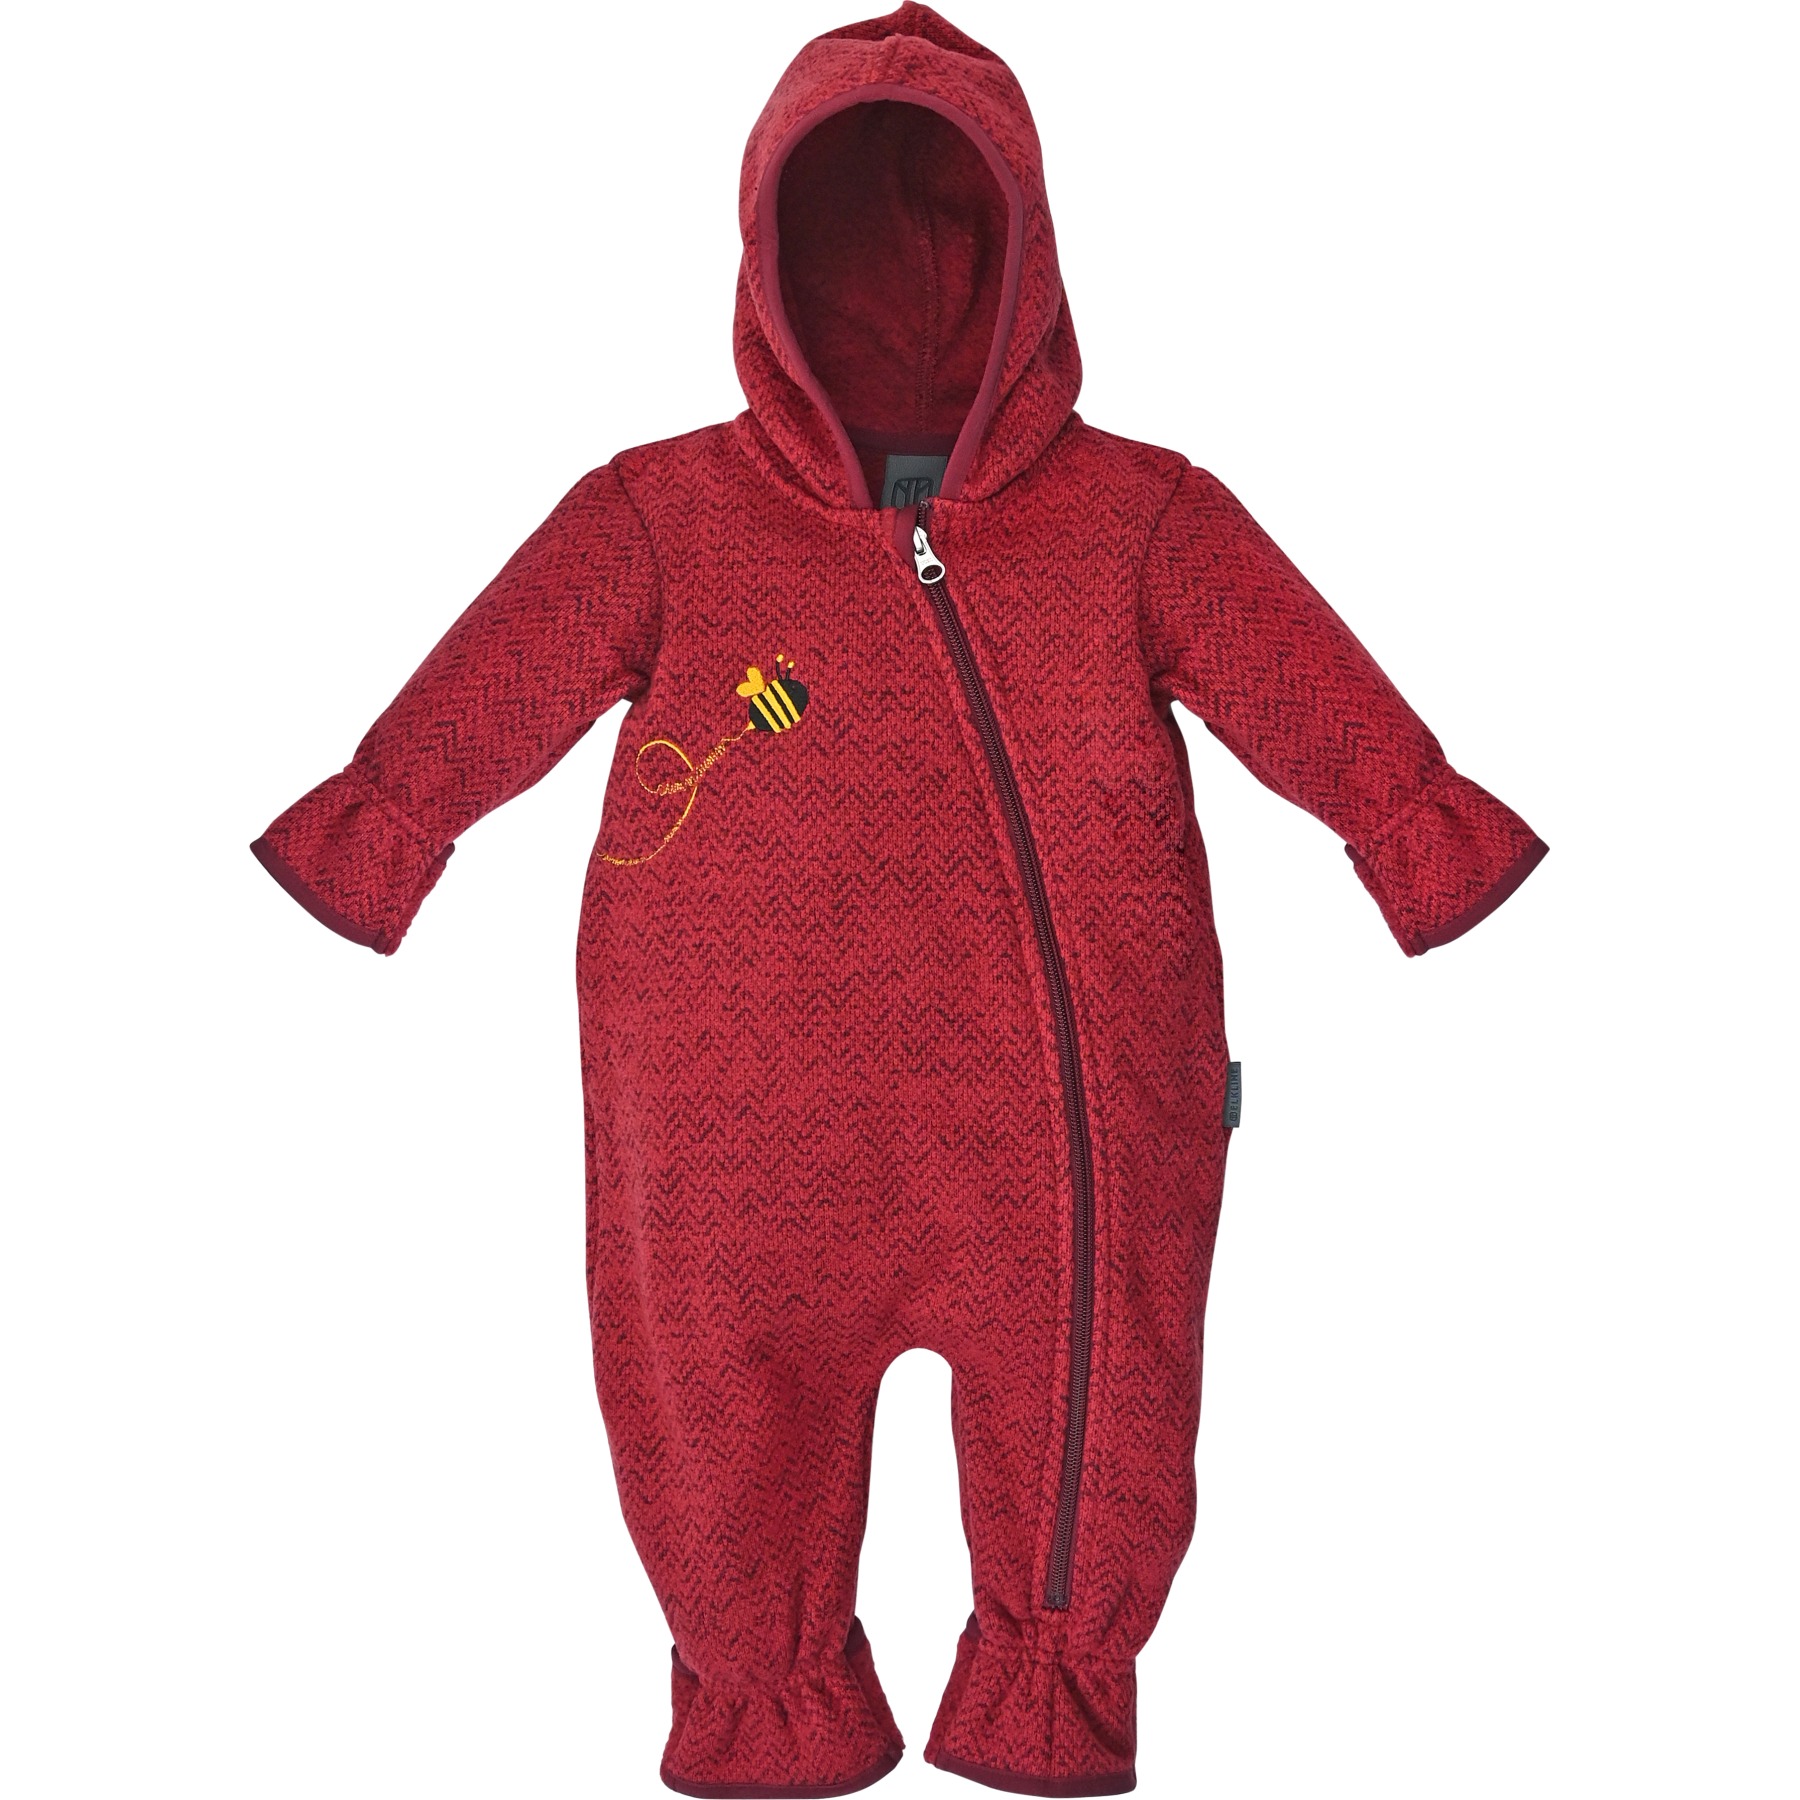 Produktbild von Elkline JUST BEE Baby Fleece Overall - rot